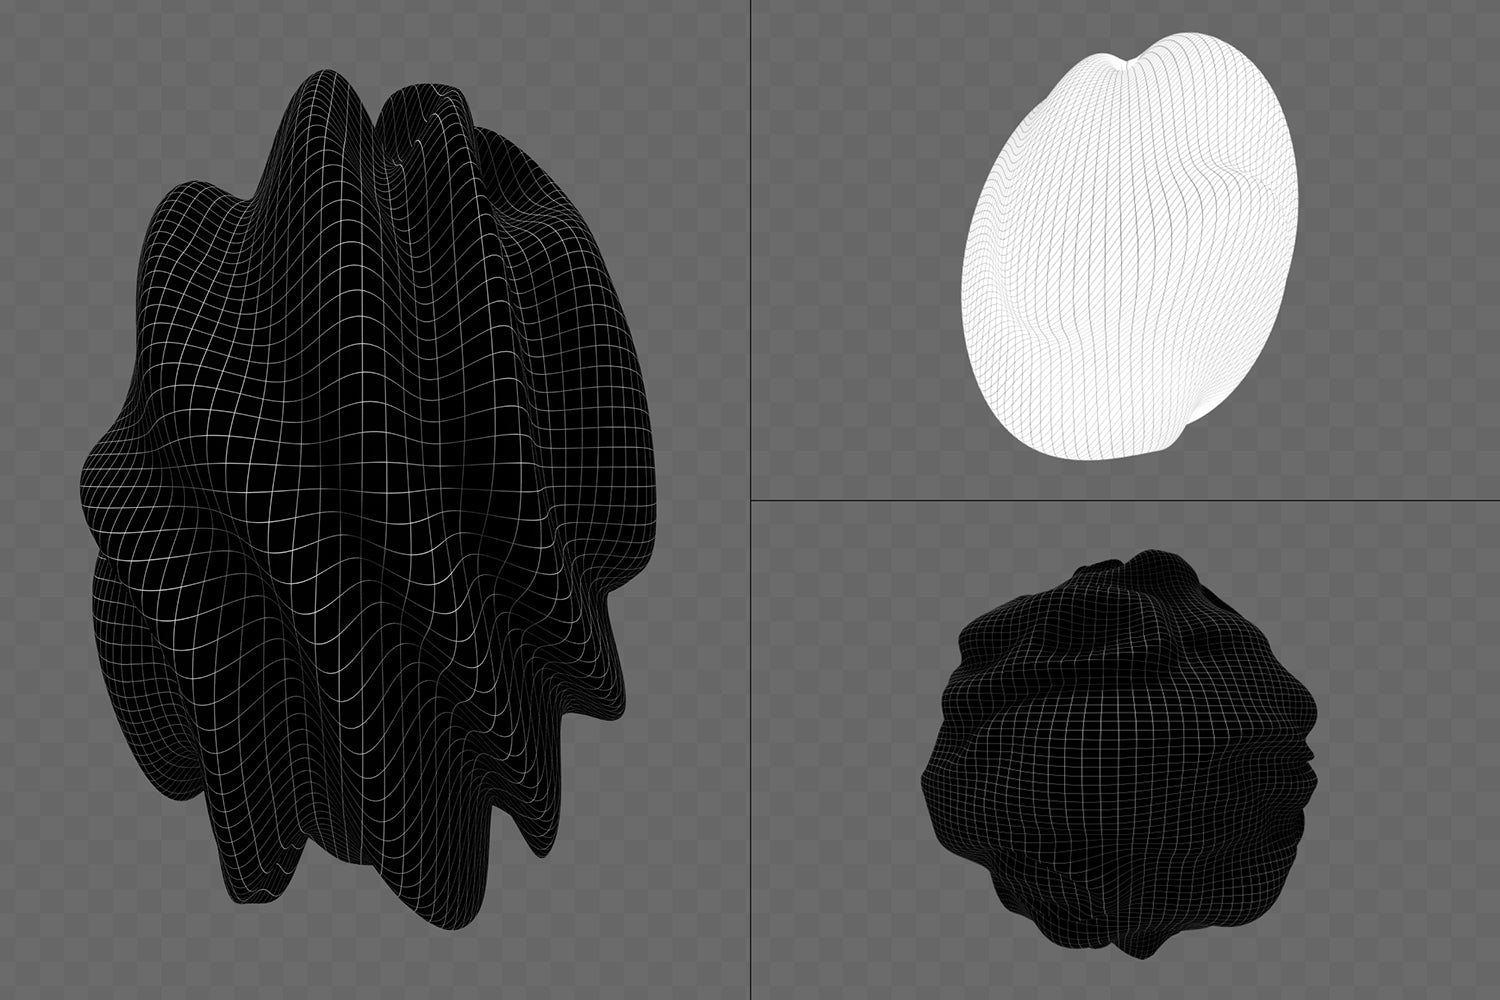 390+ Lines & Dots 3D Shapes